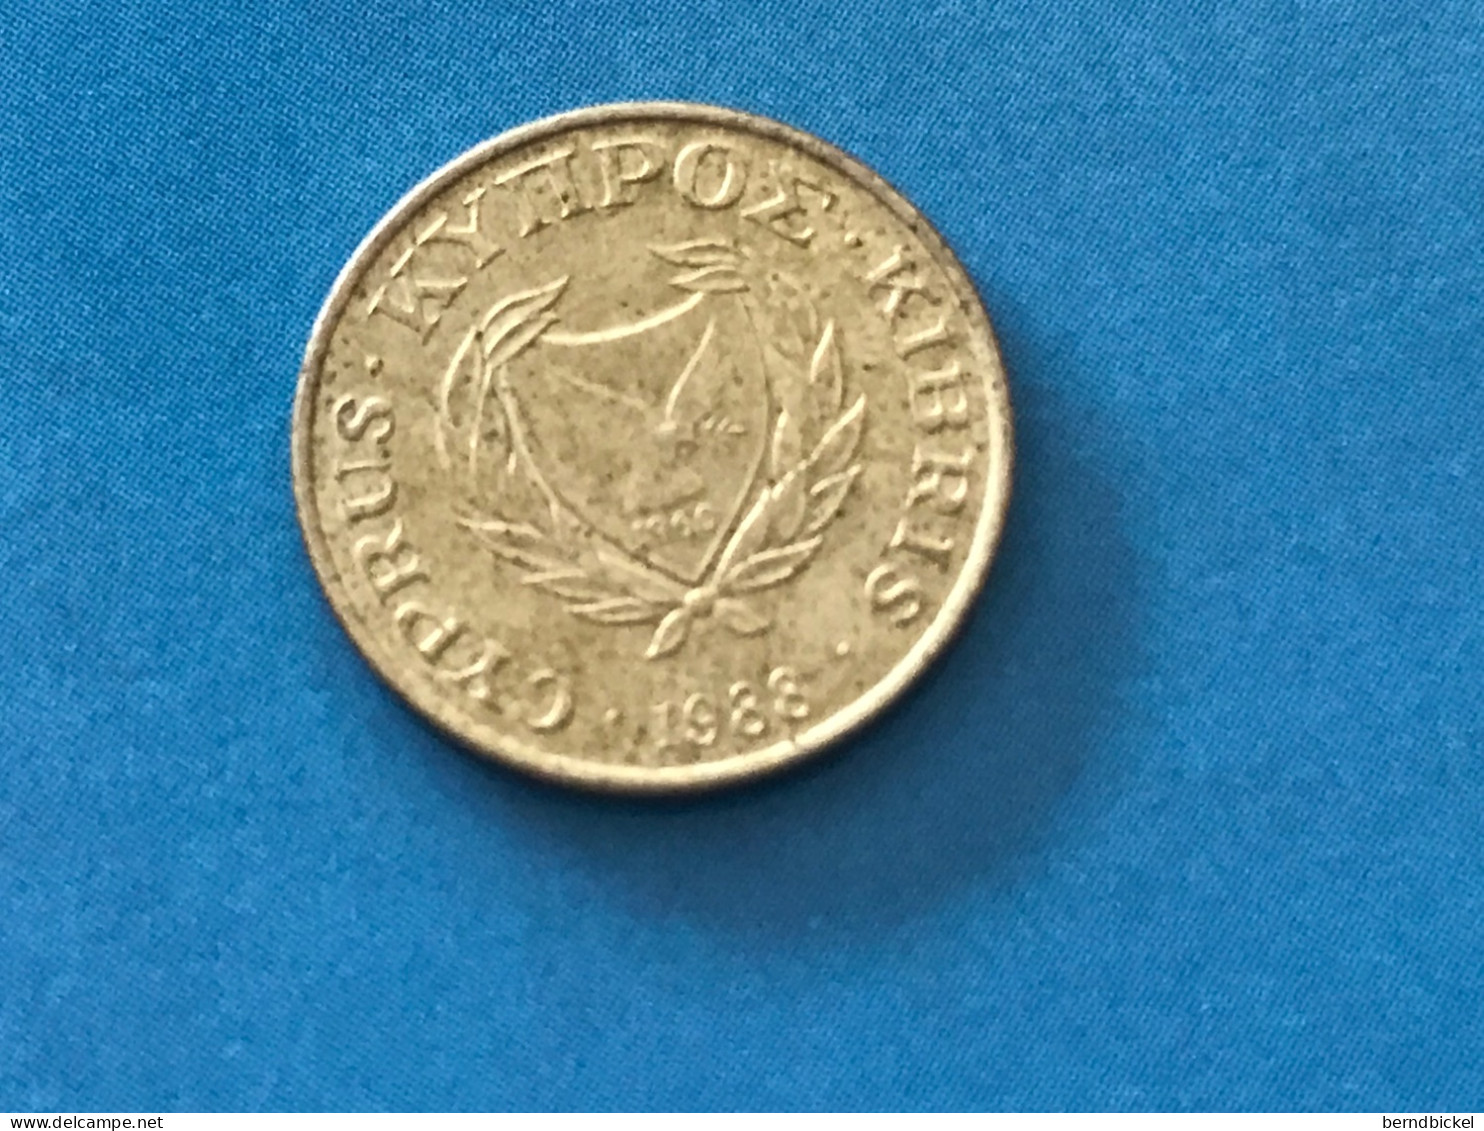 Münze Münzen Umlaufmünze Zypern 1 Cent 1988 - Cyprus